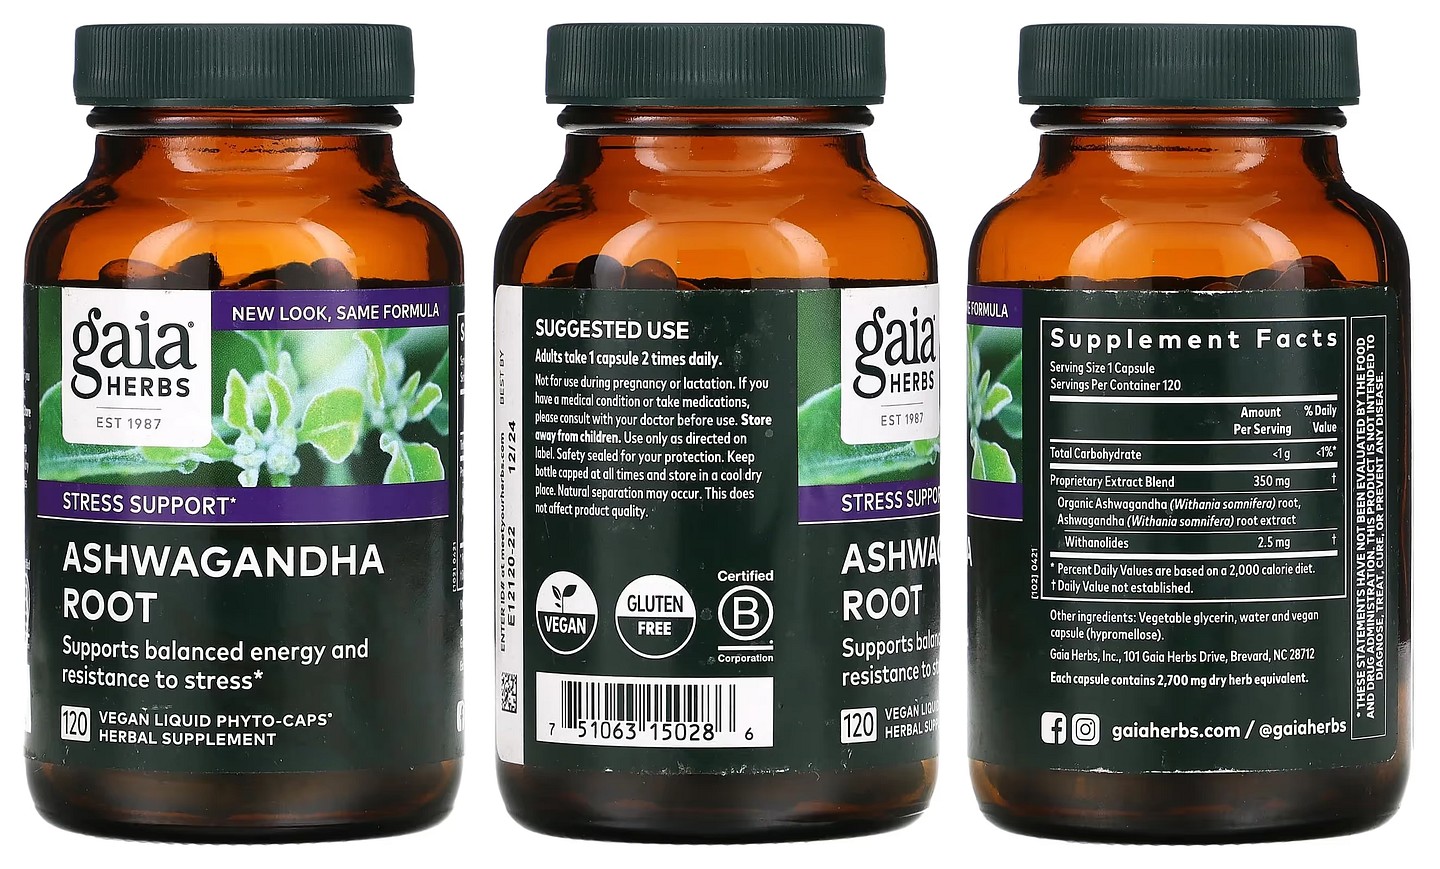 Gaia Herbs, Ashwagandha Root packaging